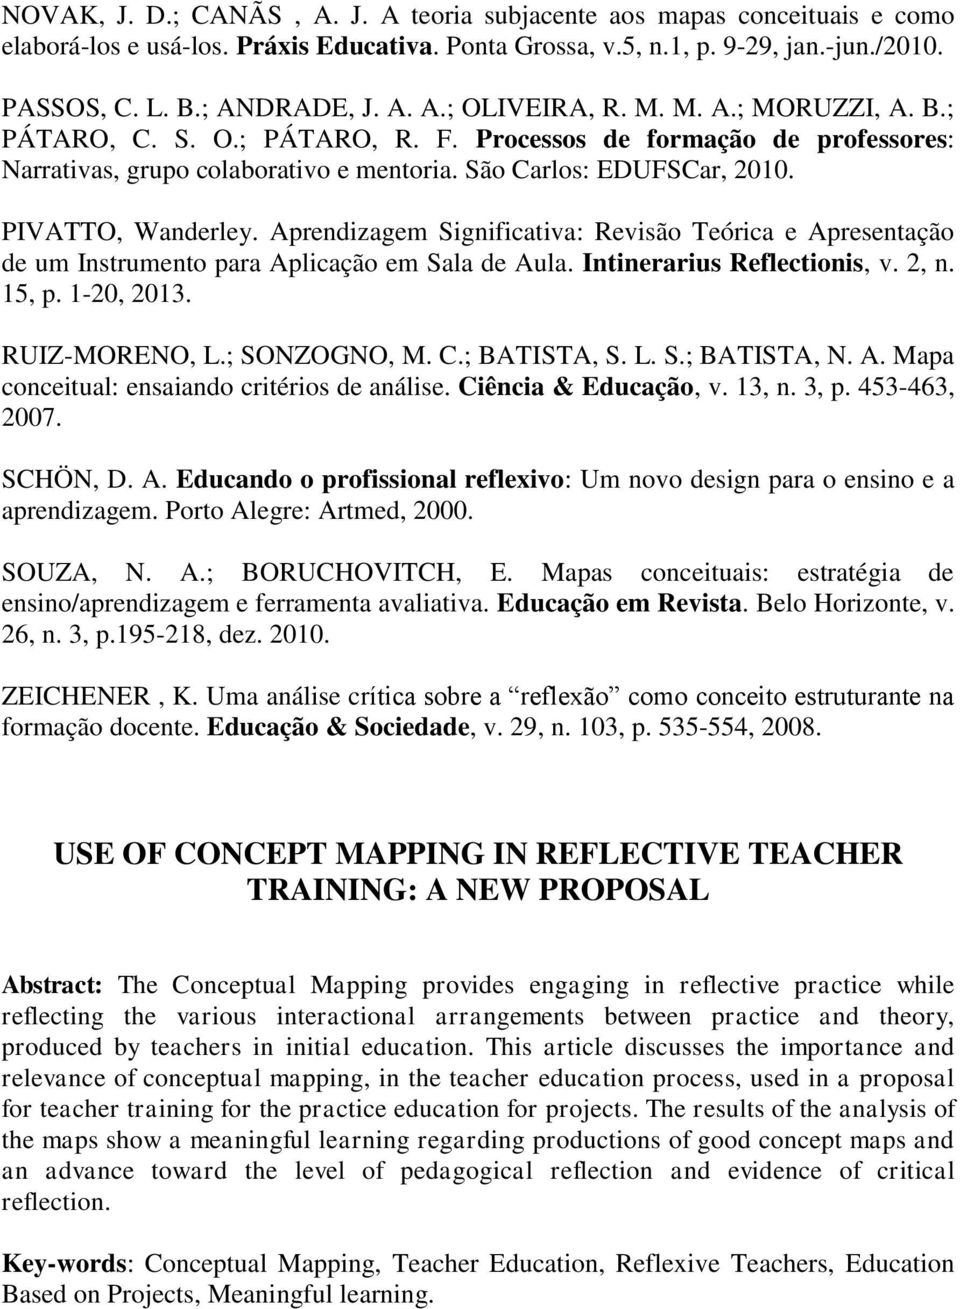 Aprendizagem Significativa: Revisão Teórica e Apresentação de um Instrumento para Aplicação em Sala de Aula. Intinerarius Reflectionis, v. 2, n. 15, p. 1-20, 2013. RUIZ-MORENO, L.; SONZOGNO, M. C.